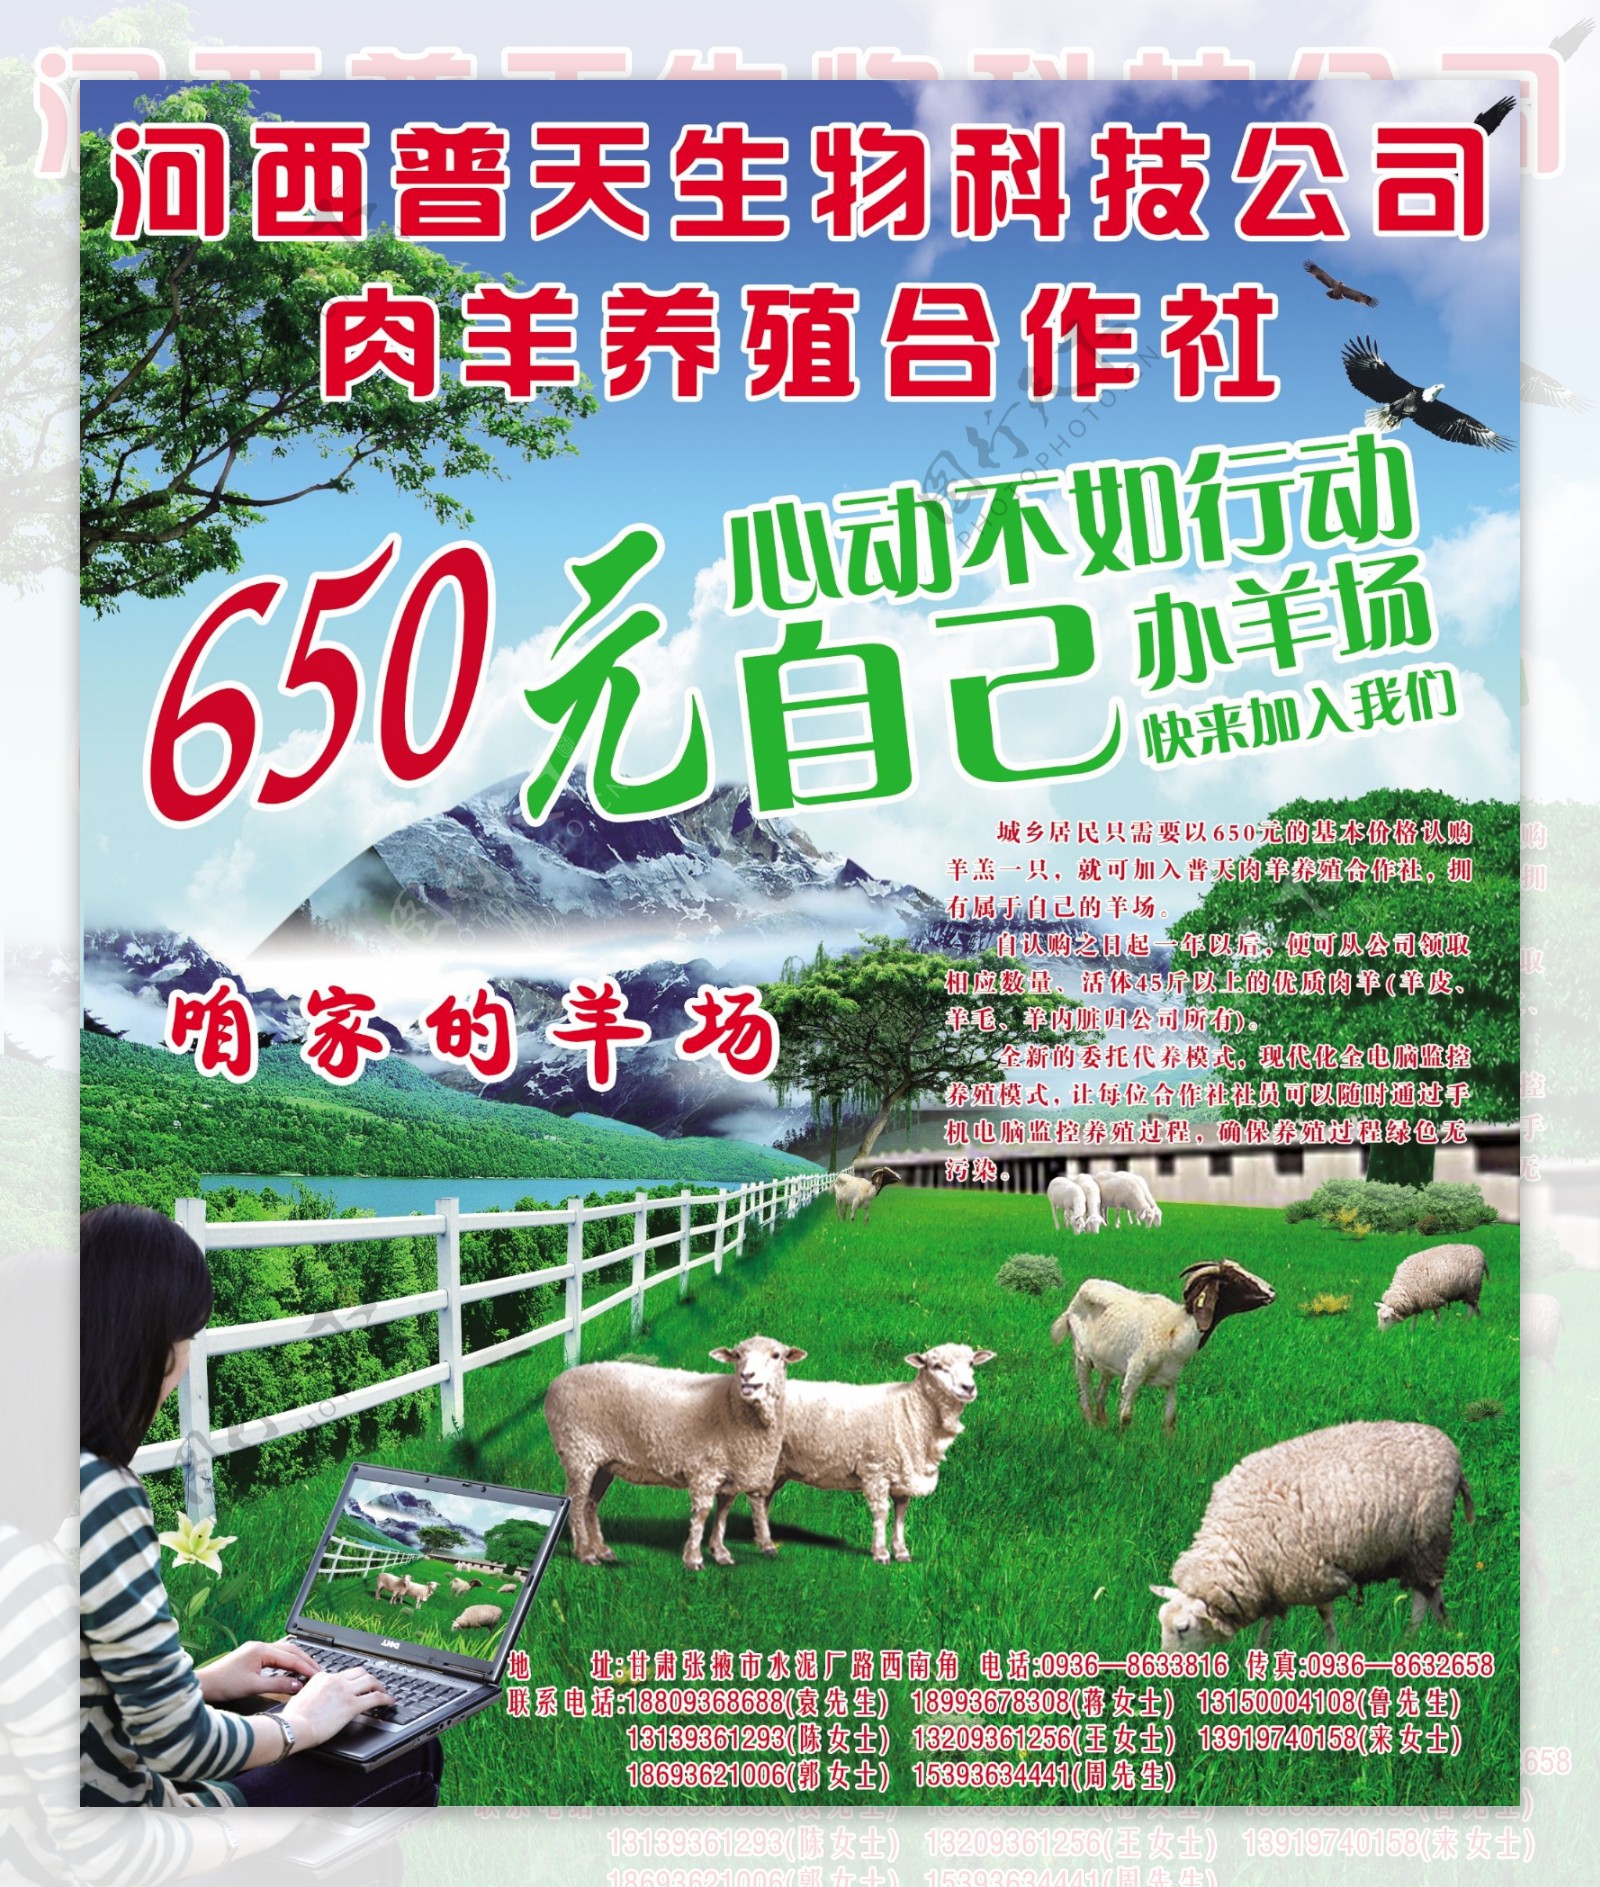 河西普天生物科技公司肉羊养殖合作社